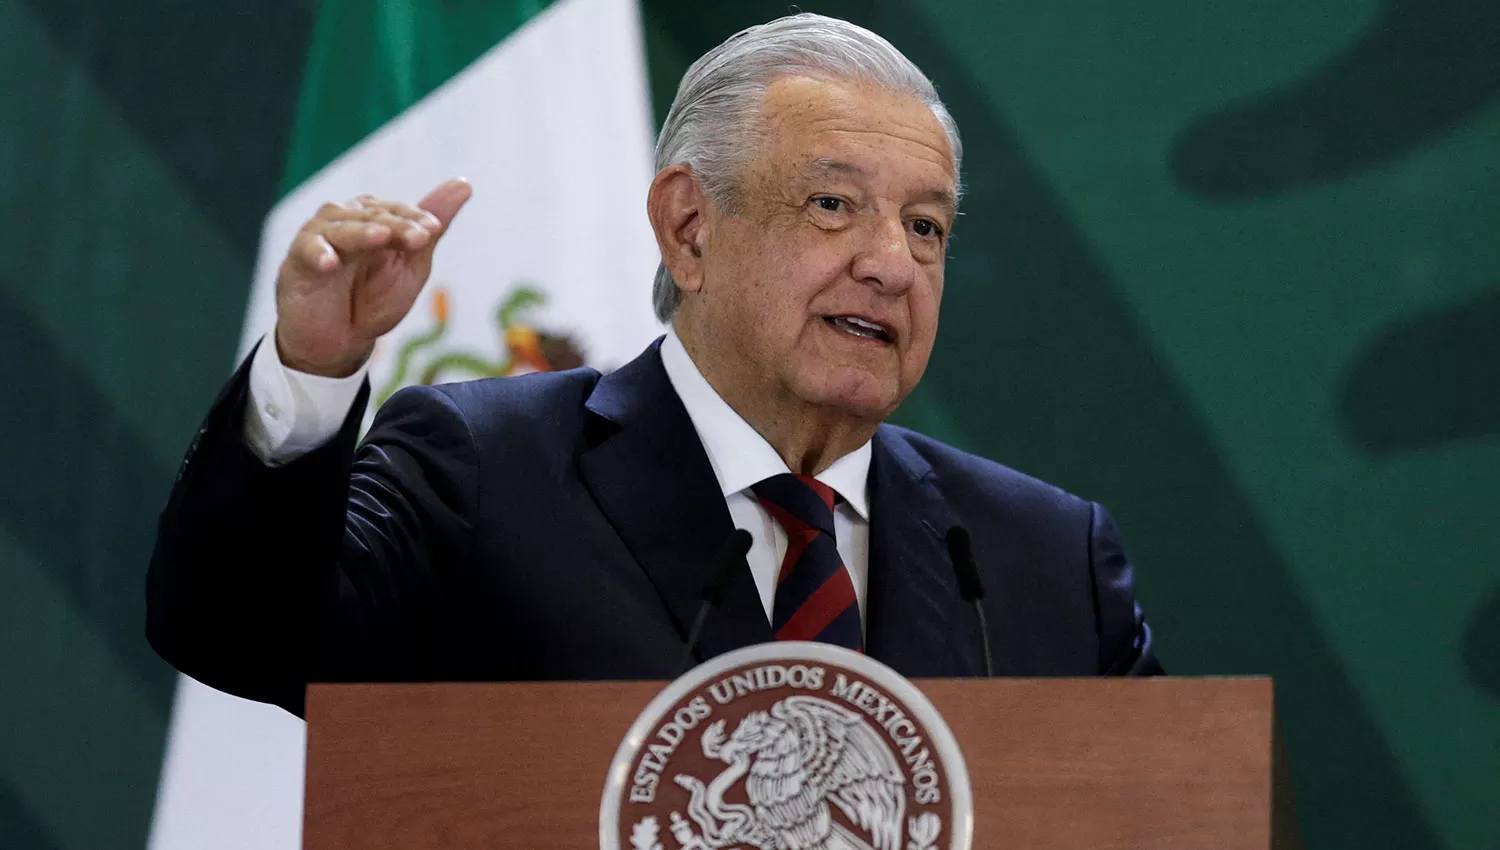 CUMBRE DE LAS AMÉRICAS. Obrador cuestionó la decisión de Estados Unidos de no invitar a Cuba, Venezuela y Nicaragua.